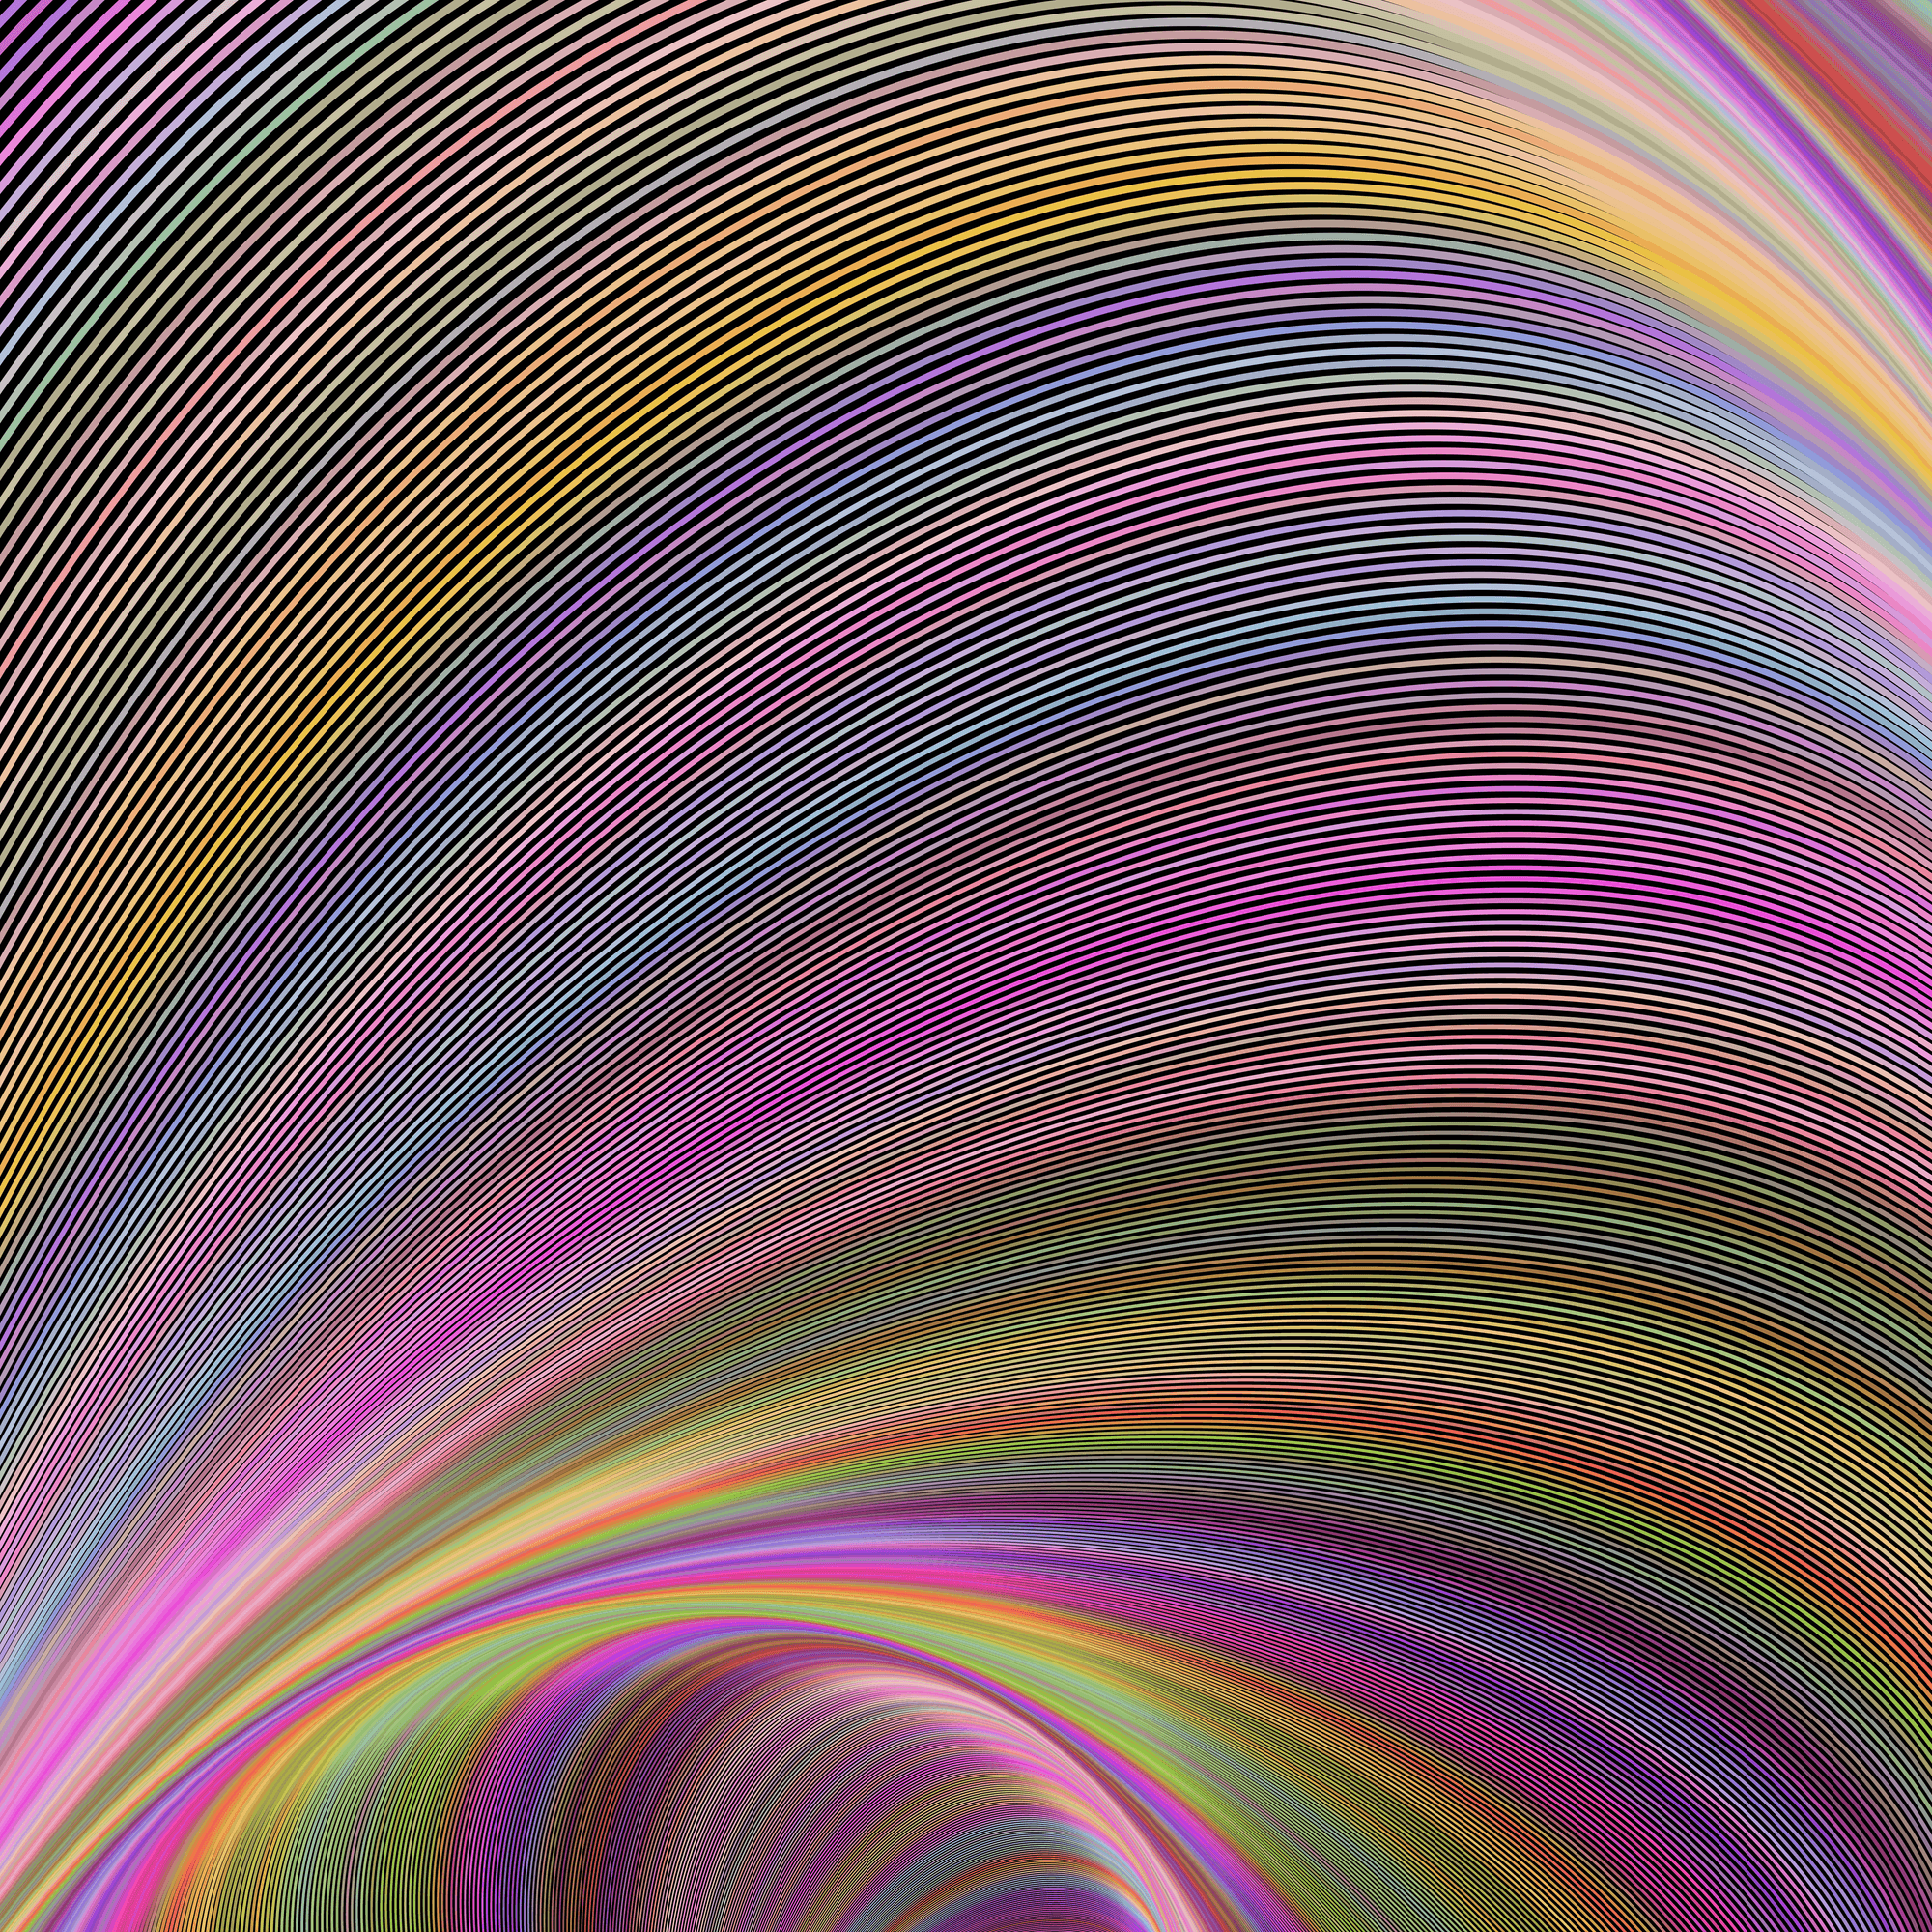 Curved Colorful Magic #77 - Curved Colorful Magic by David Zydd